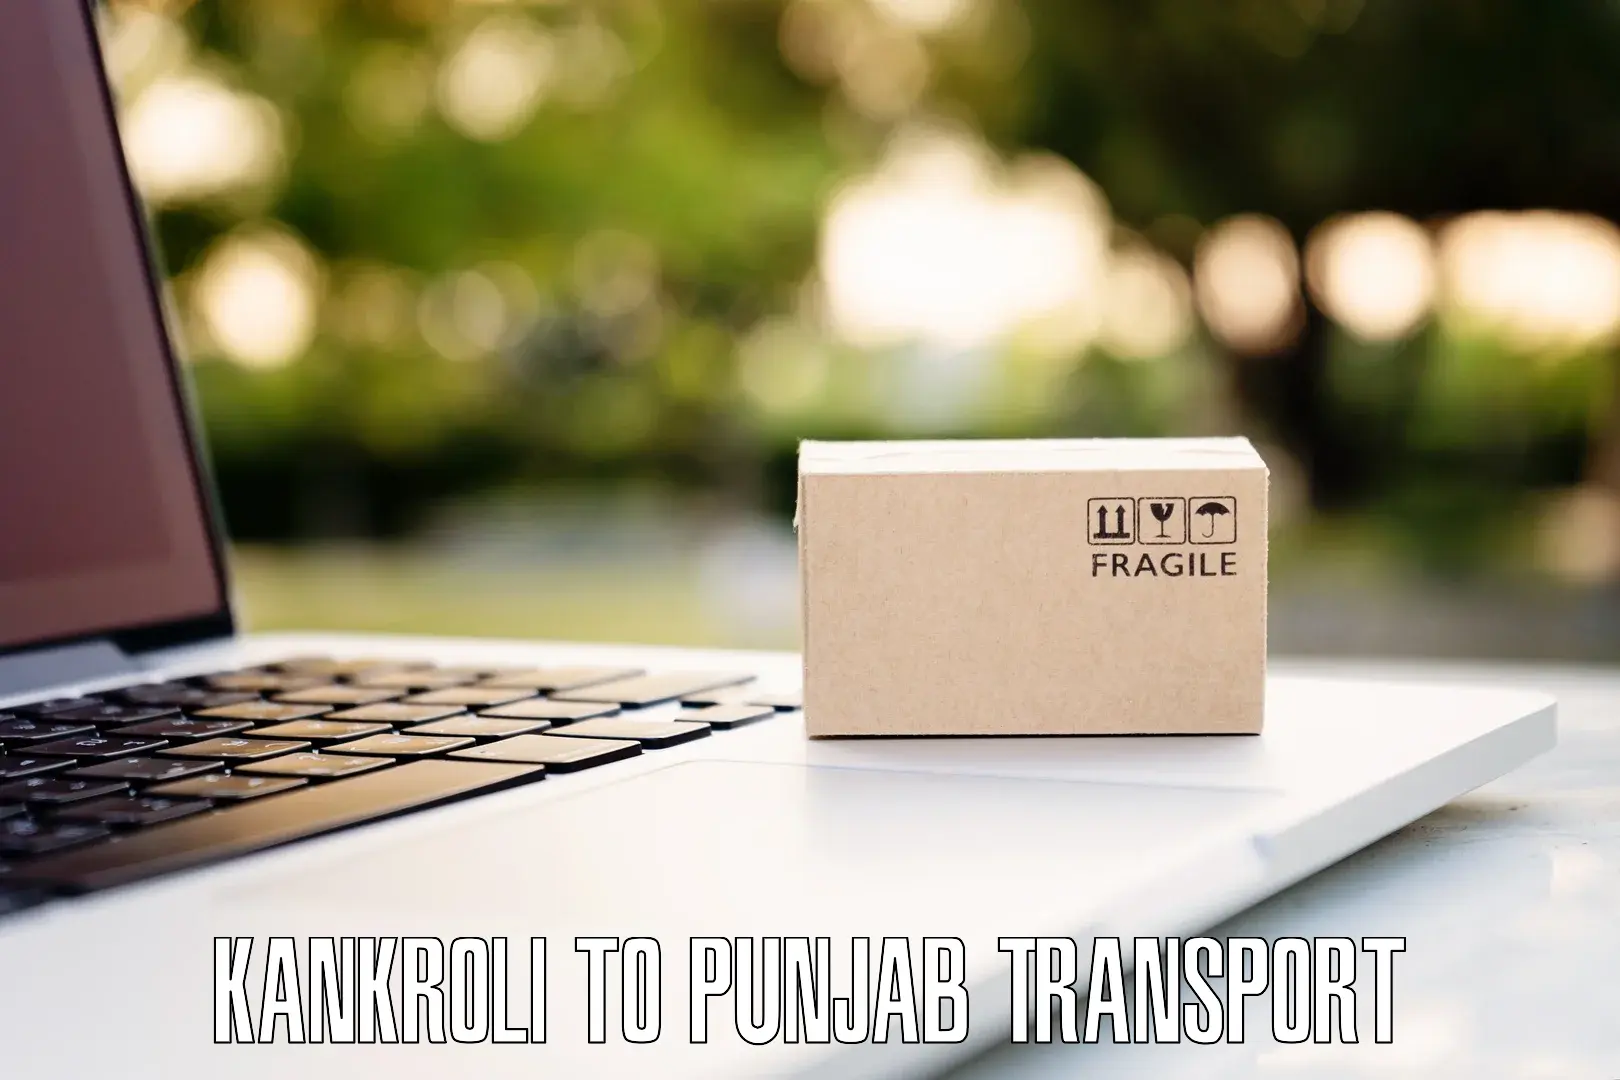 Two wheeler parcel service Kankroli to Punjab